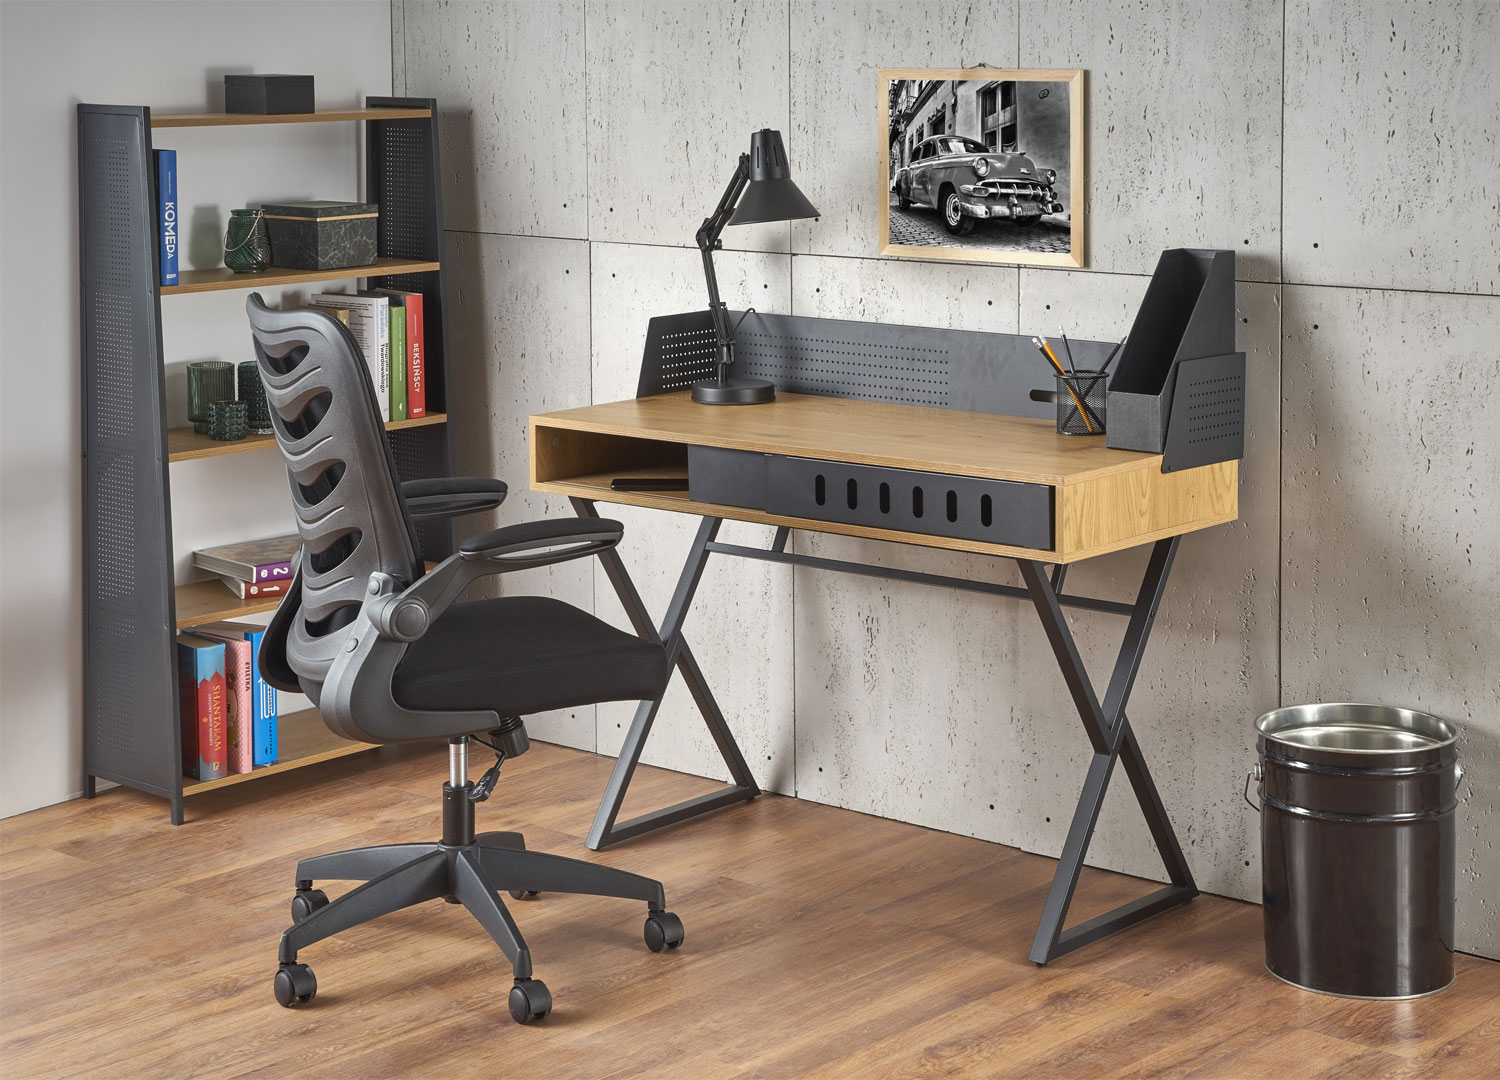 Meuble bureau au style industriel pas cher décor bois avec rangement